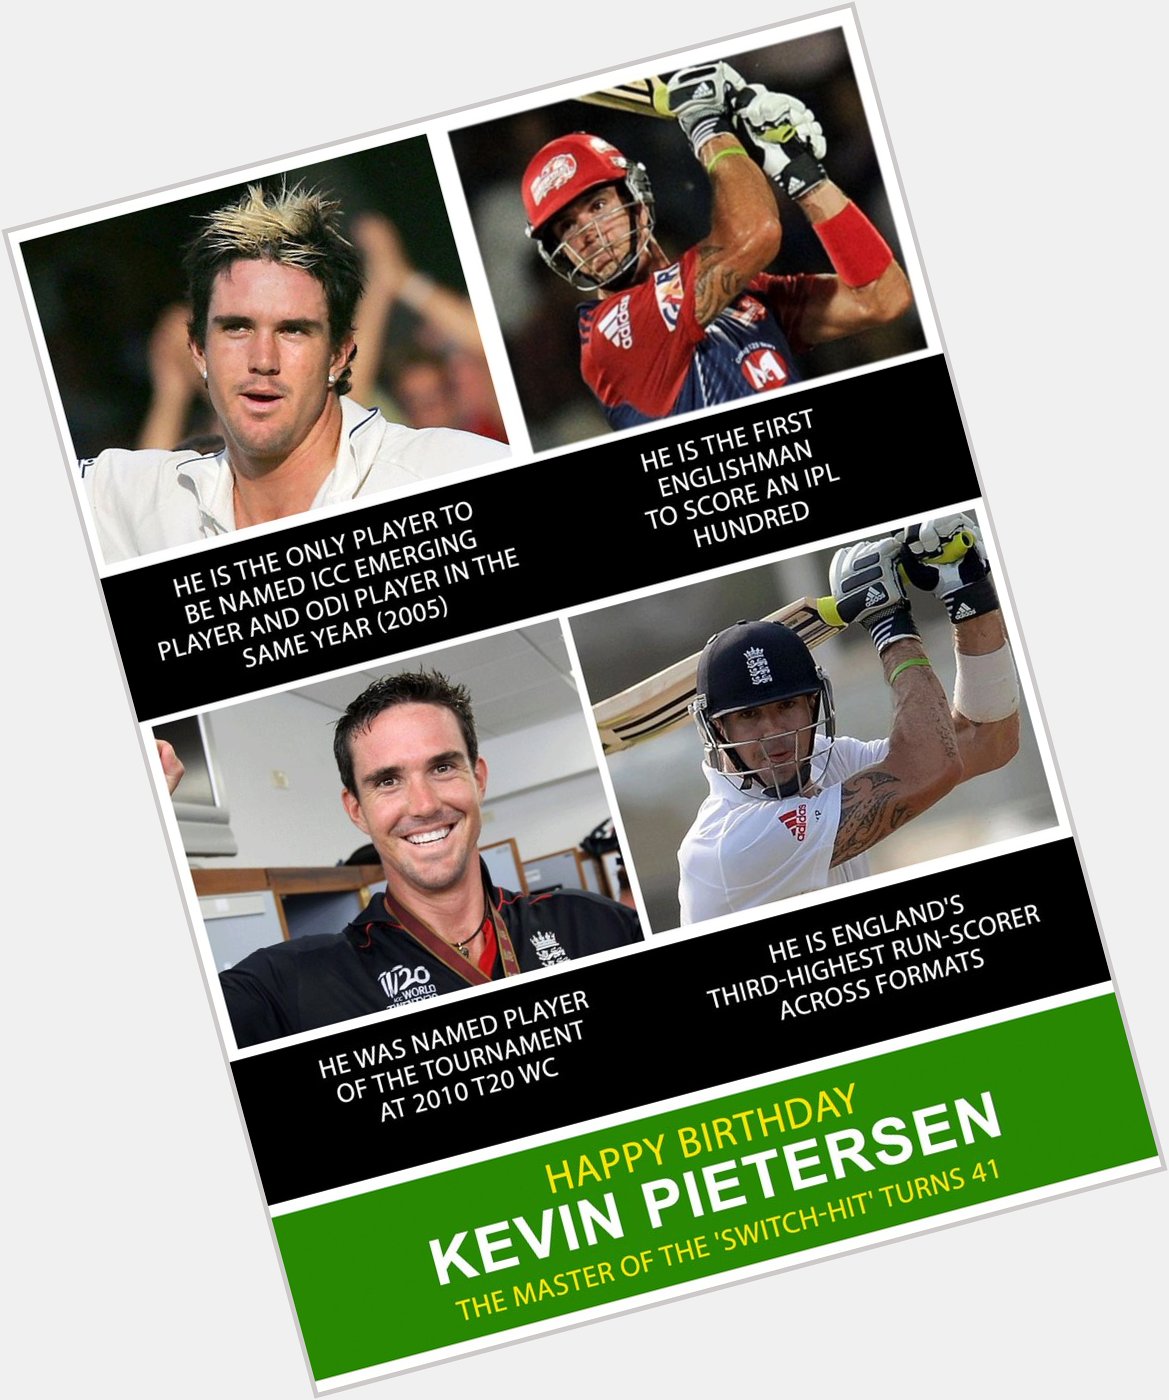 Happy Birthday Kevin Pietersen.   